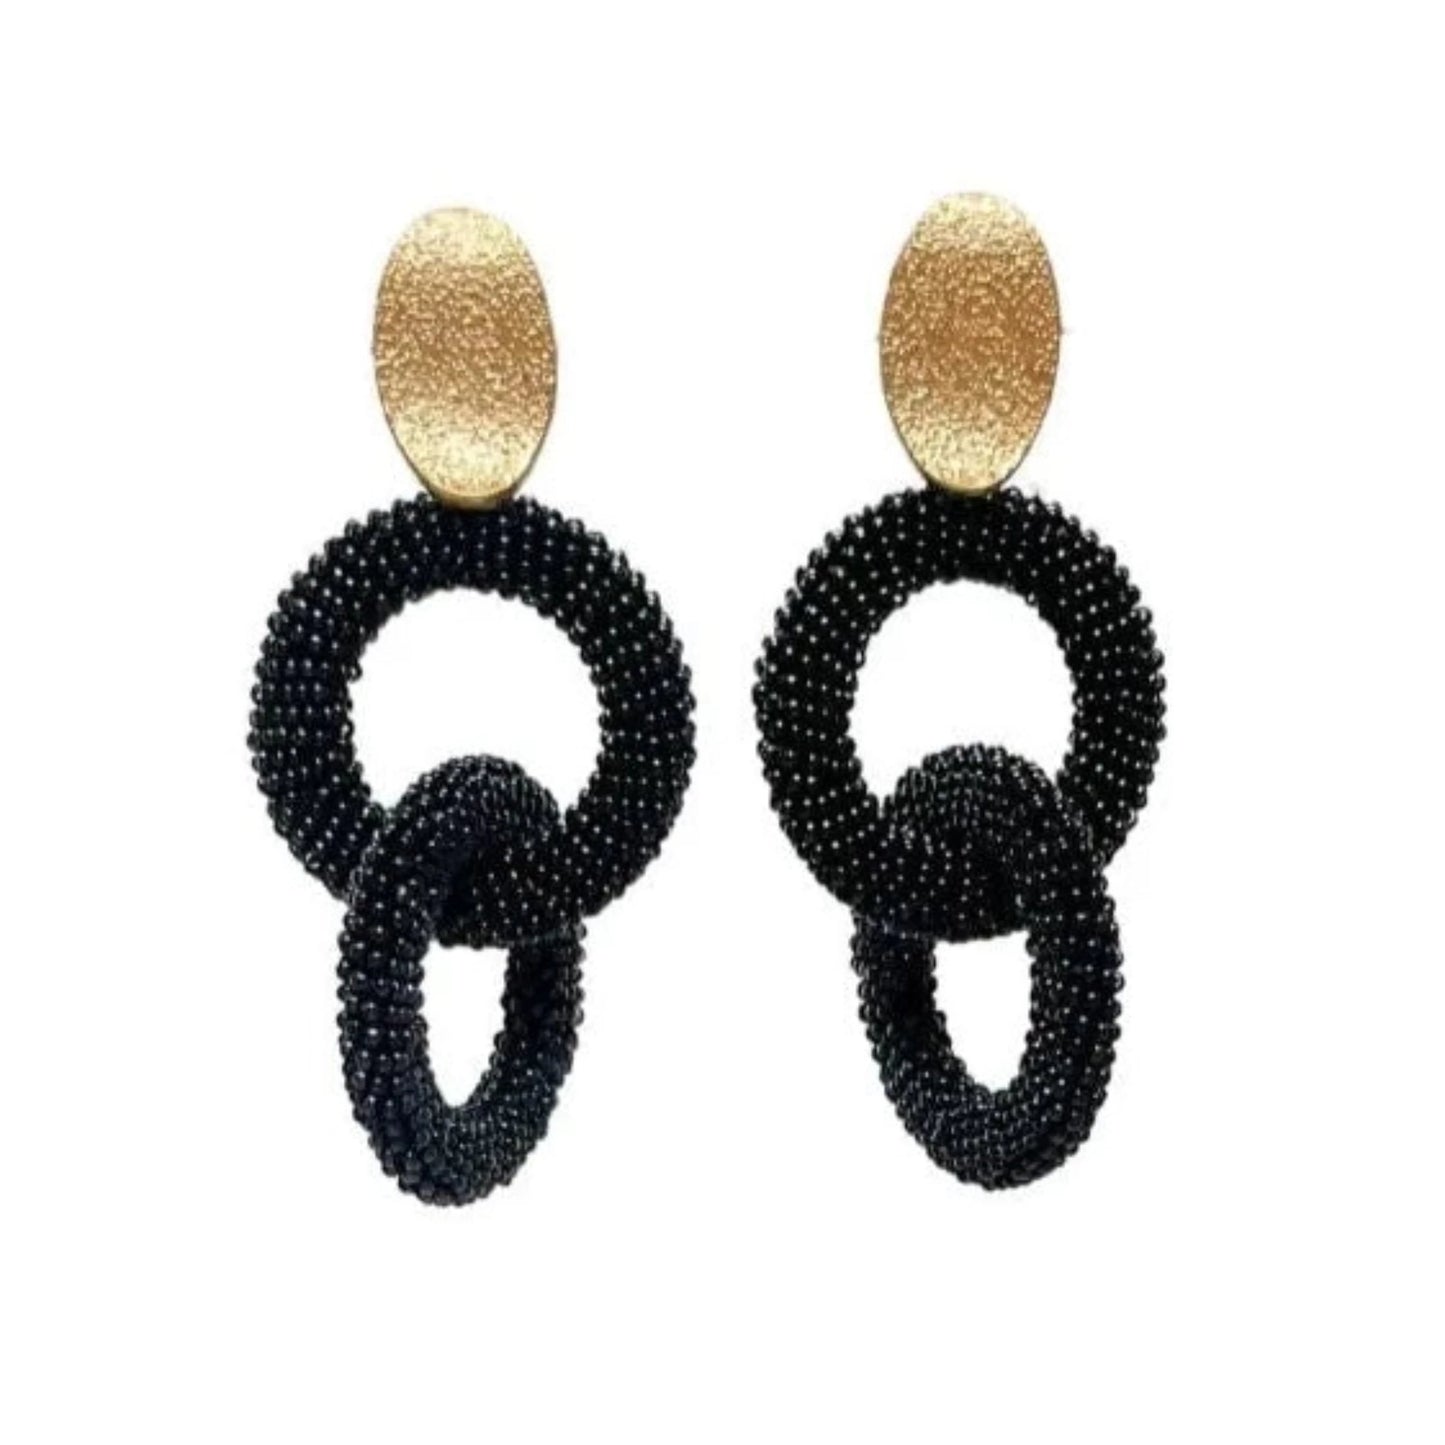 Black Natalia Earrings by Millie B.